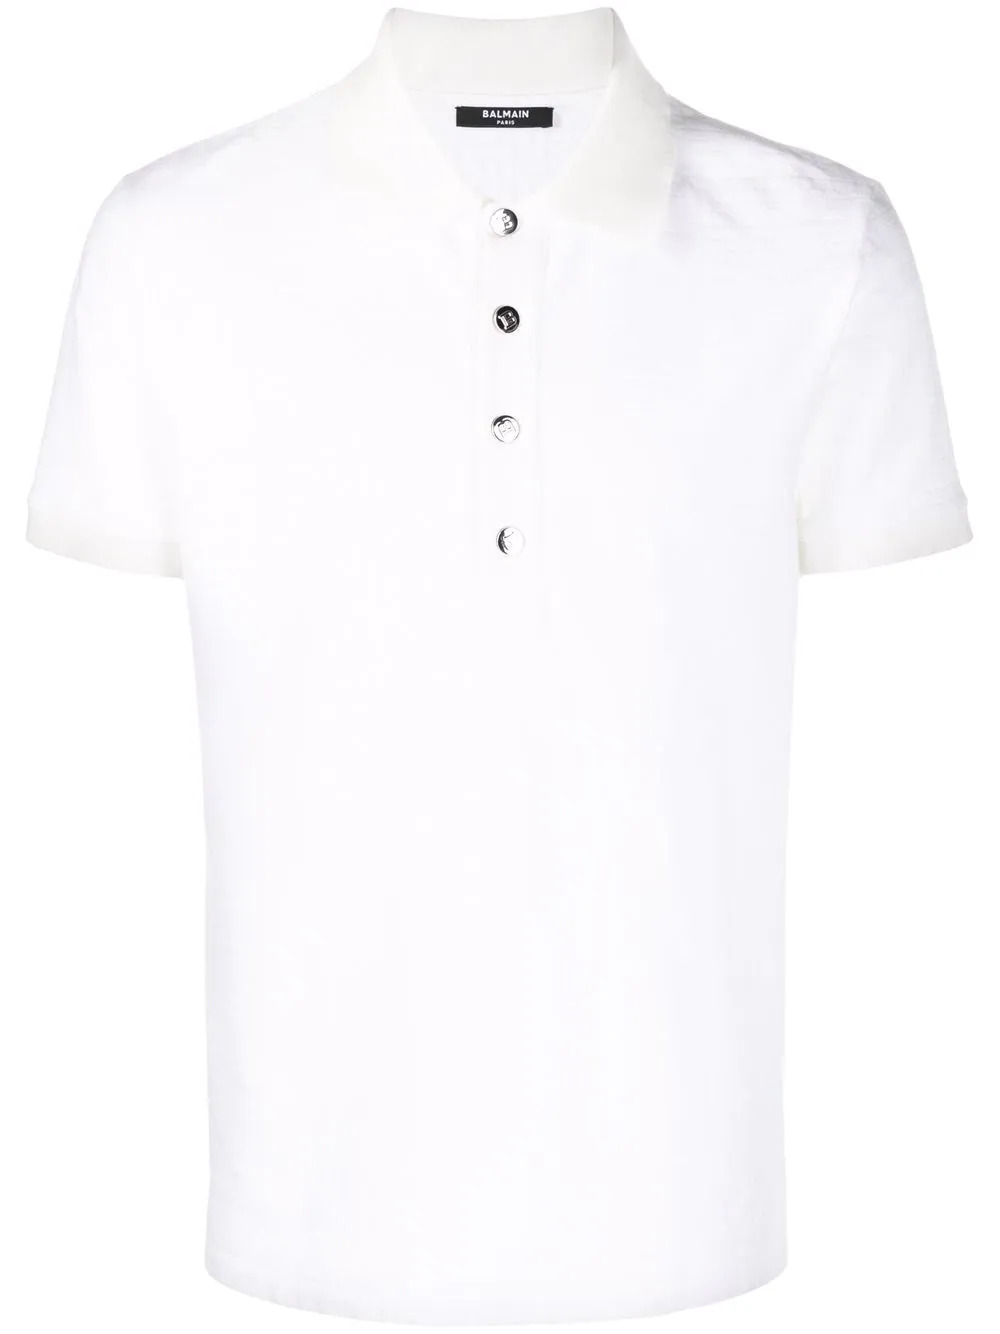 Poloshirt mit geprägtem Monogramm in Weiß